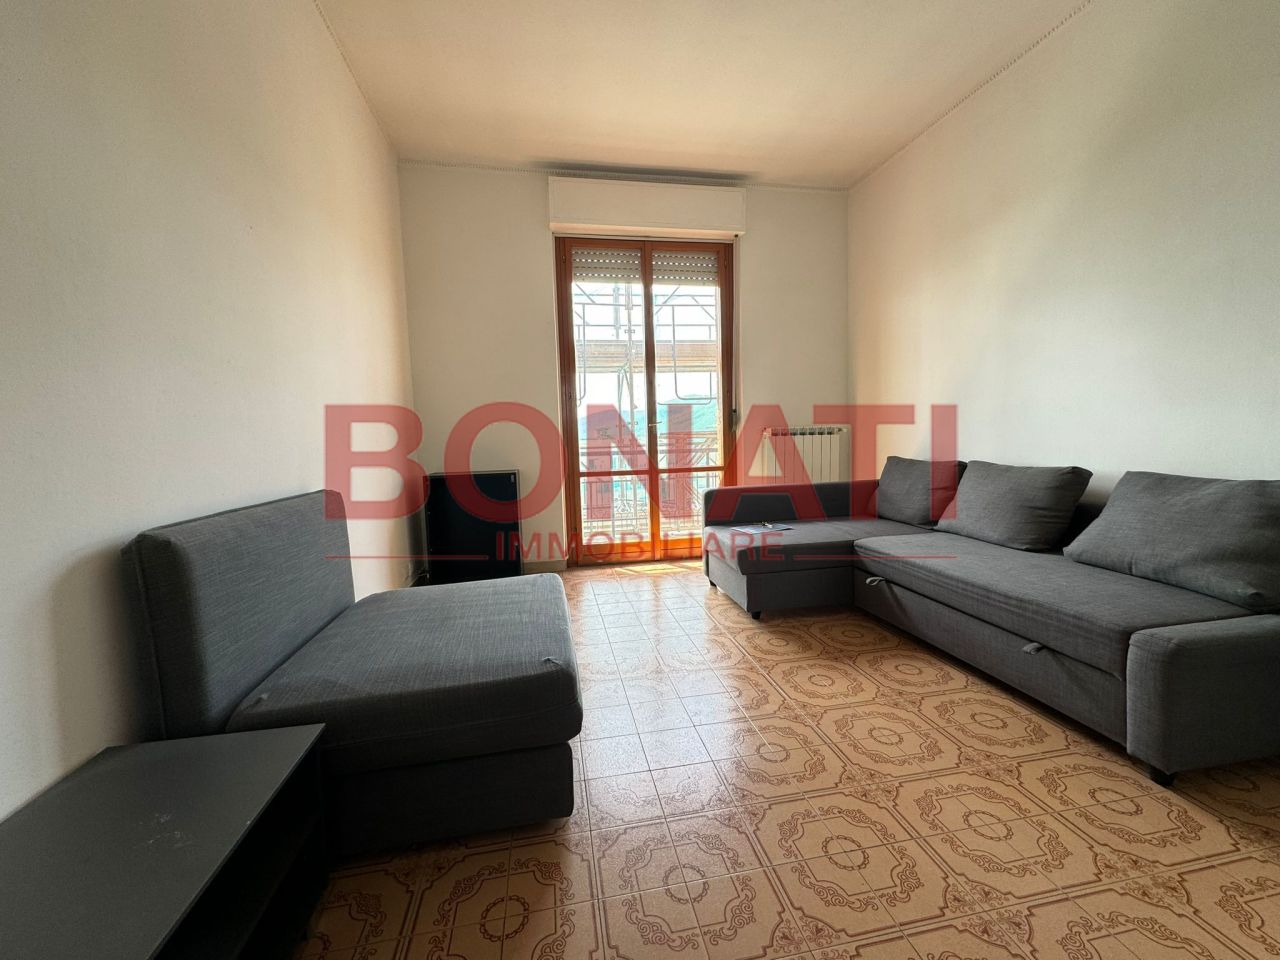 Appartamento in vendita a Sarzana, 4 locali, prezzo € 188.000 | PortaleAgenzieImmobiliari.it